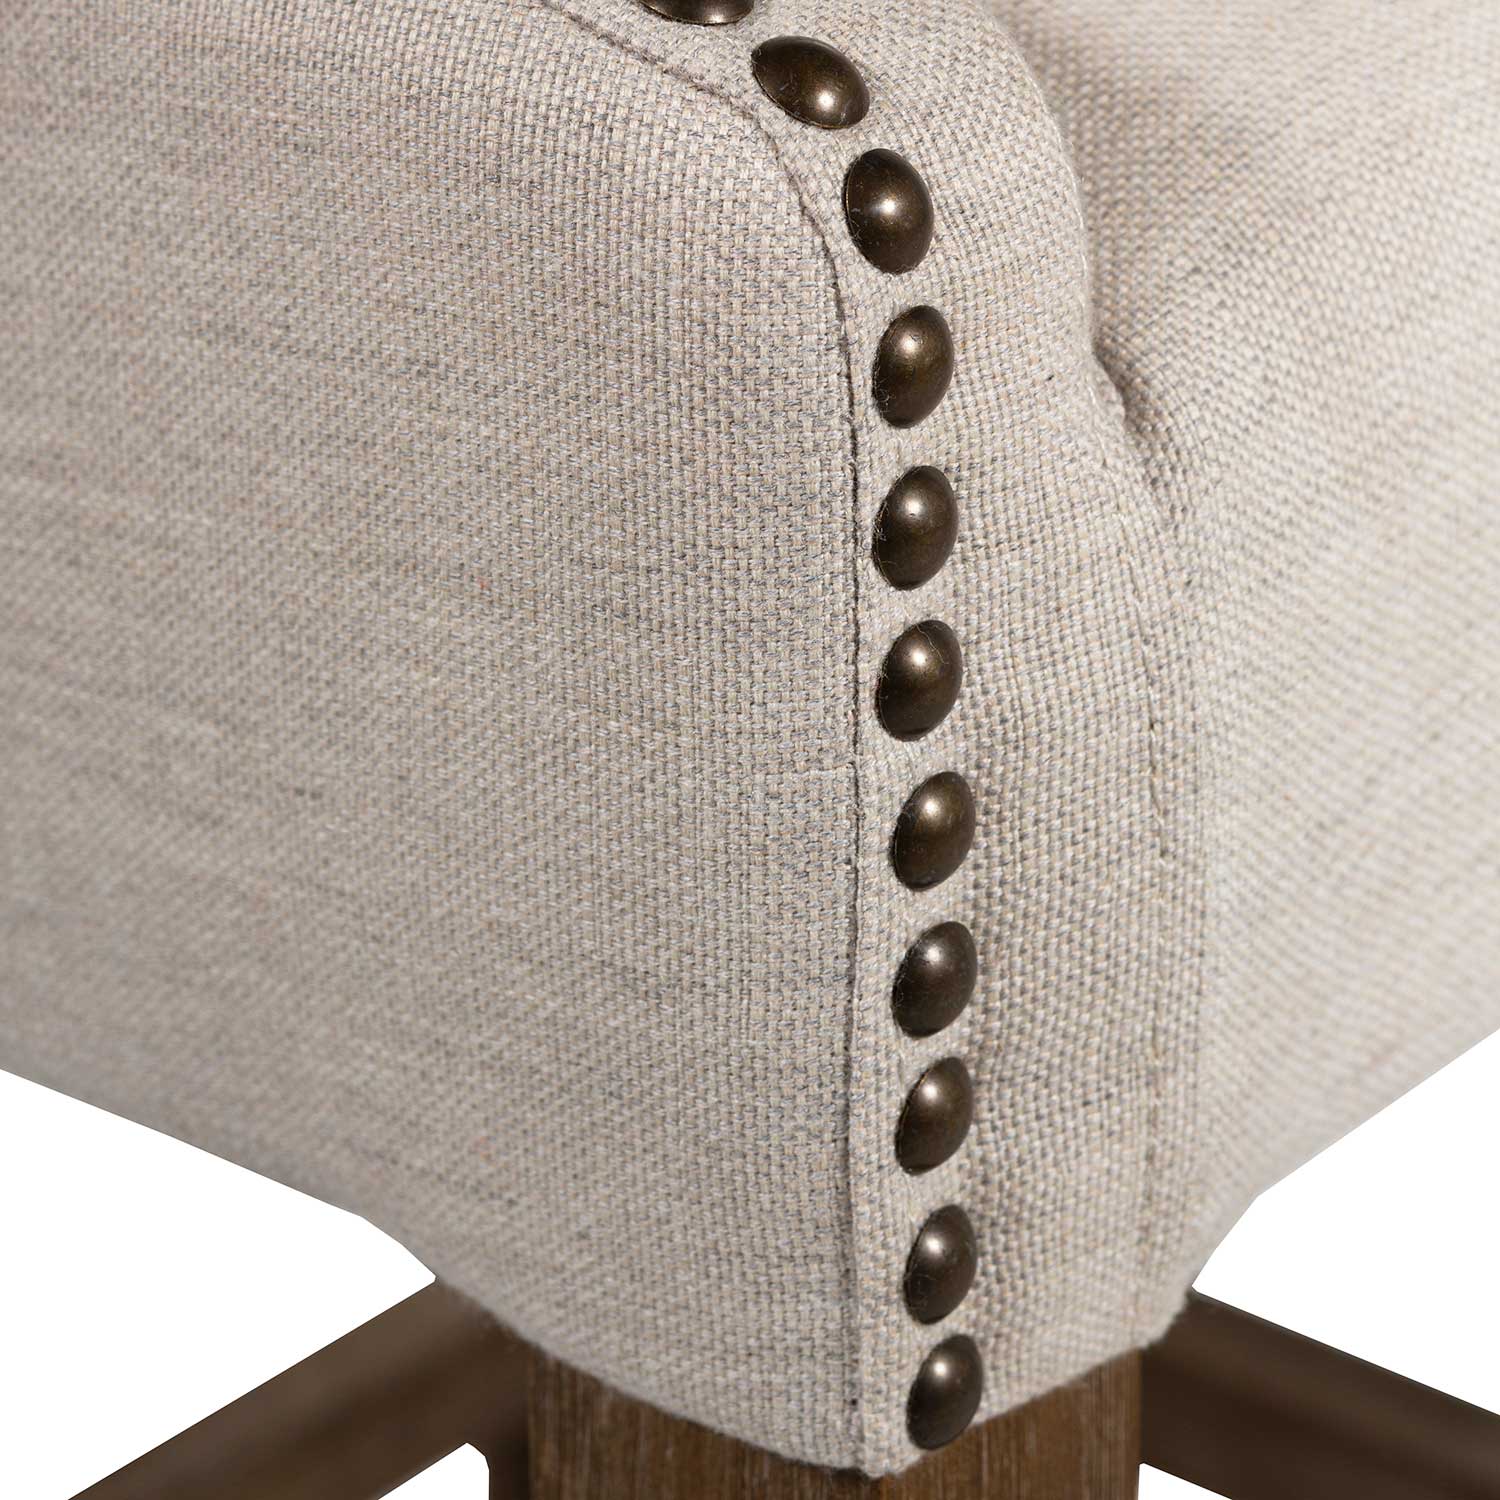 winston bar stool – linen dove thumbnail image